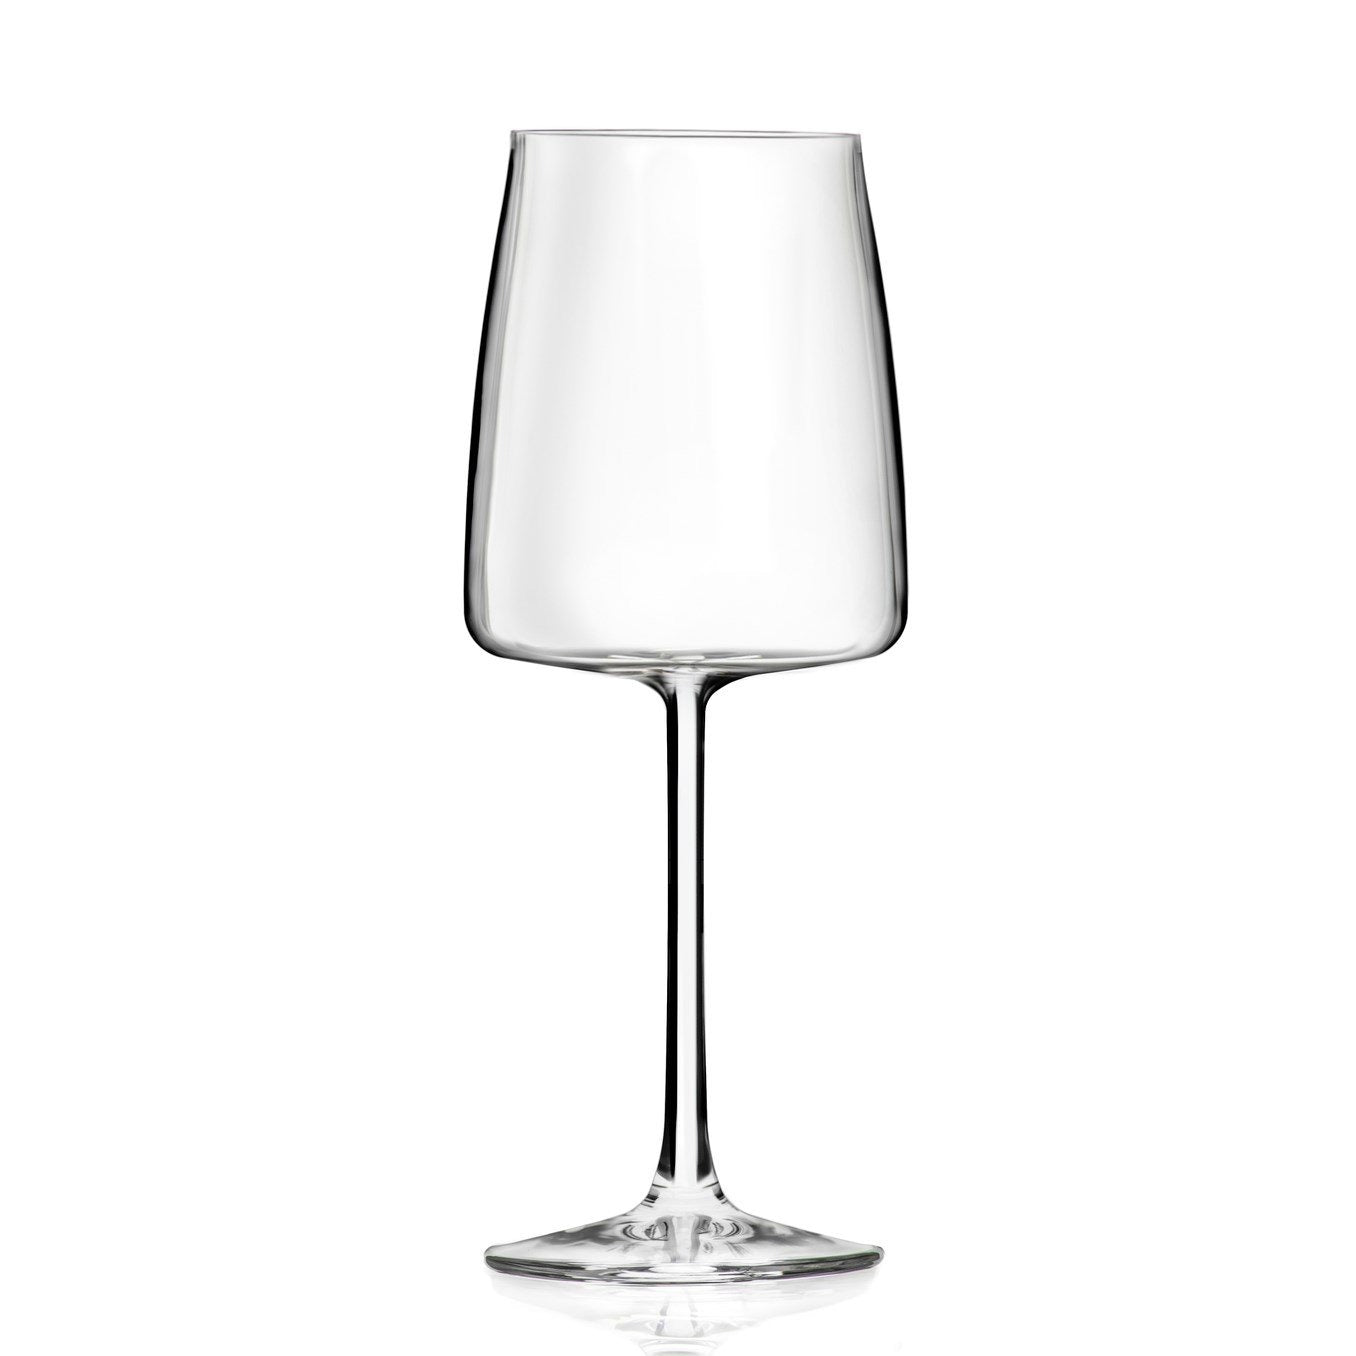 Verona Wine Glass